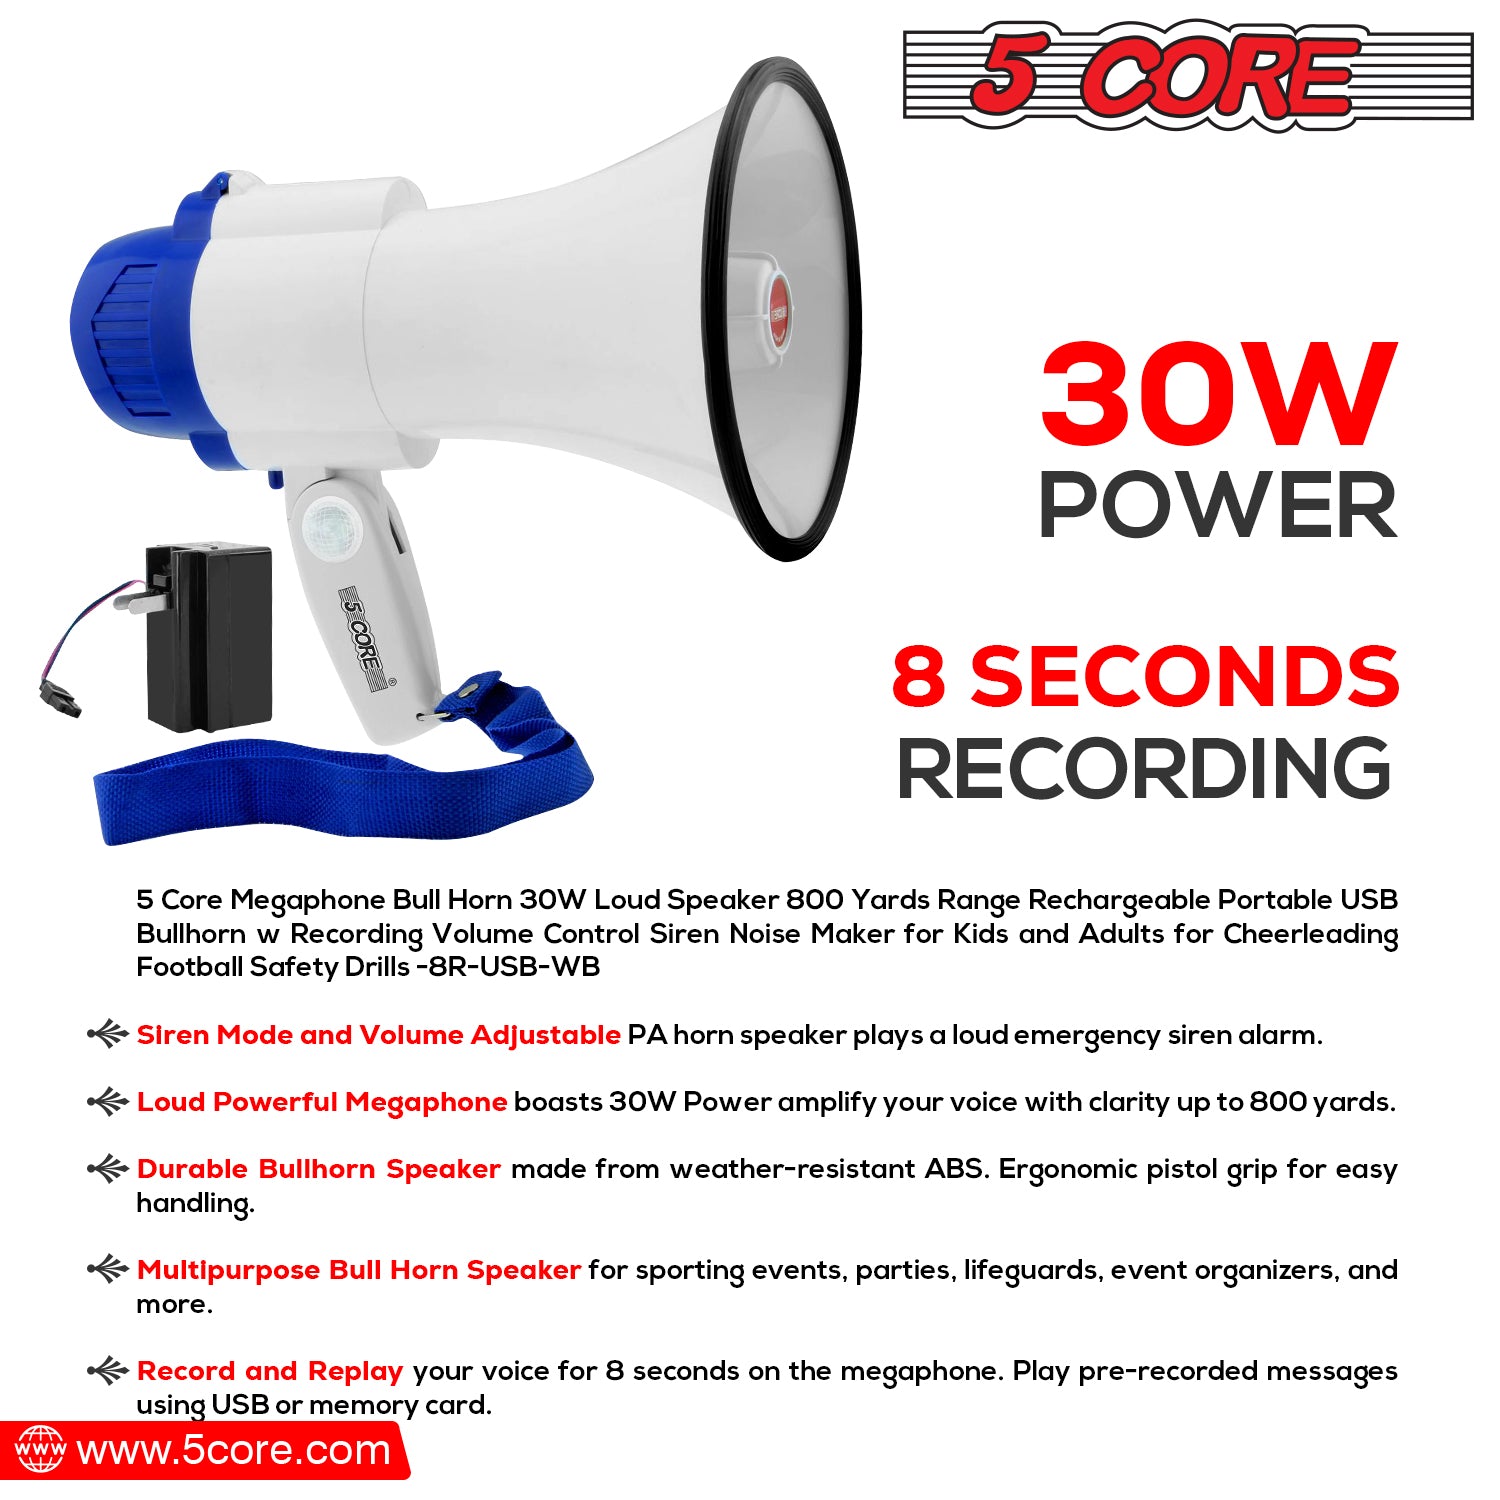 5Core Megaphone Portable Battery Power 30W Bullhorn w Siren Volume Adjustable Bull Horn Loud Speaker 800Ft Range